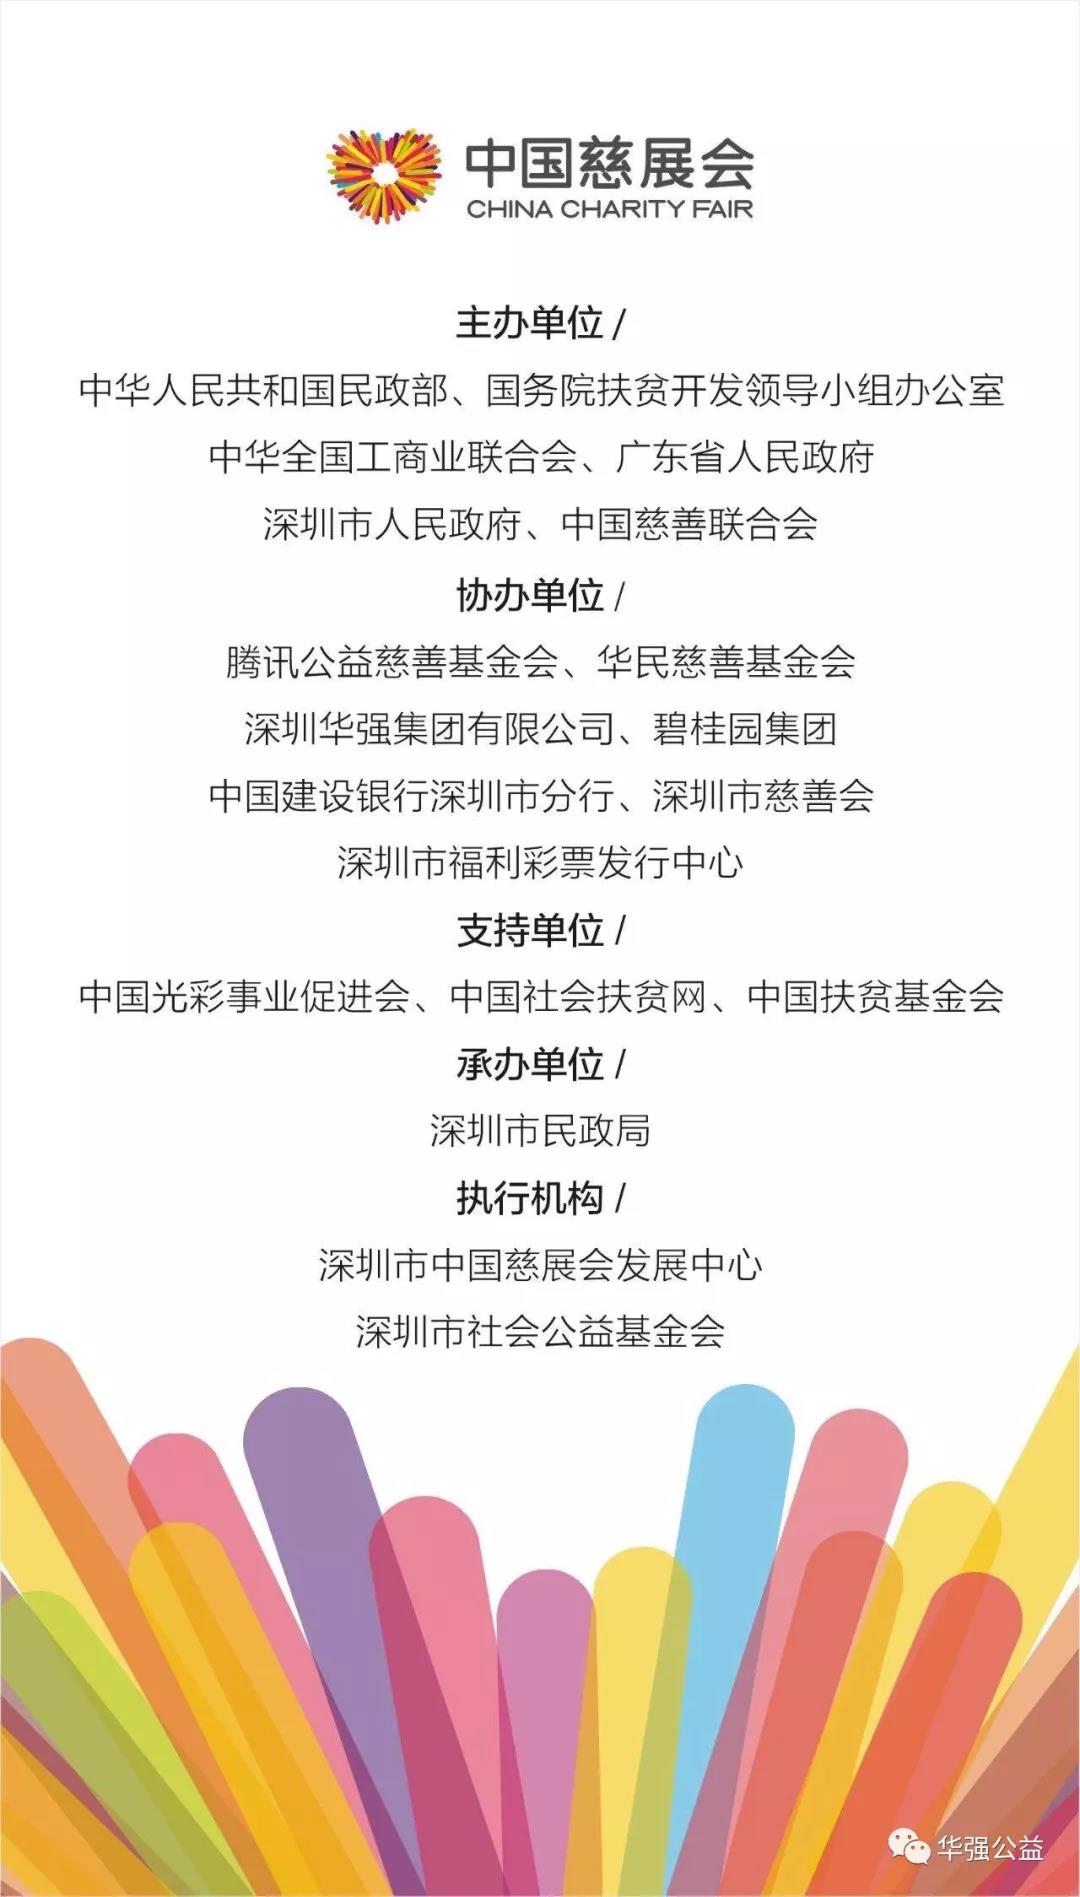 “华强公益”亮相第六届中国公益慈善项目交流展示会6.jpg